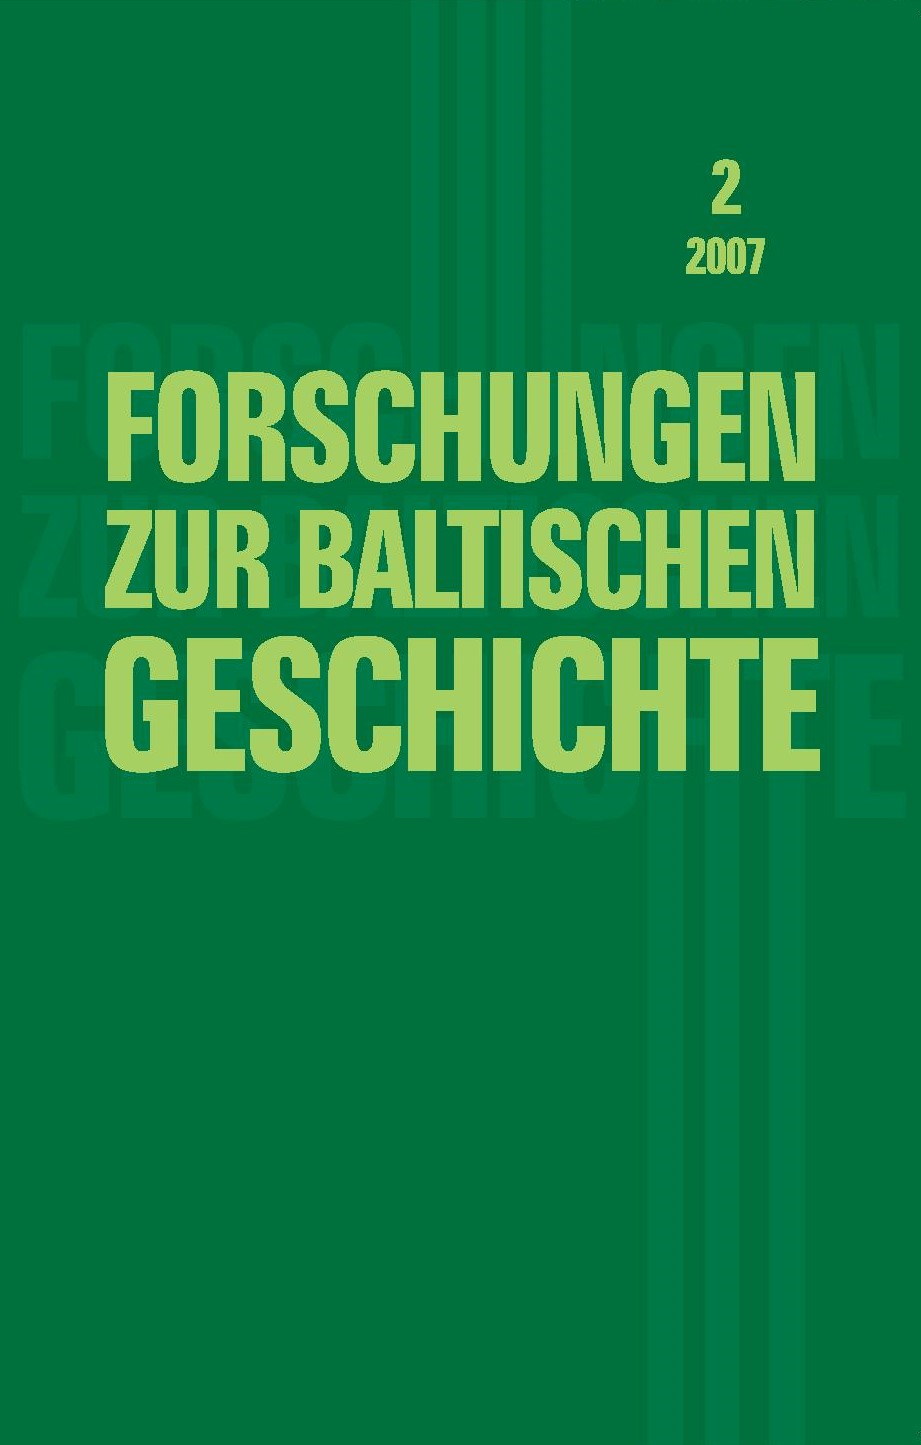 Forschungen zur baltischen Geschichte, Band 2, 2007